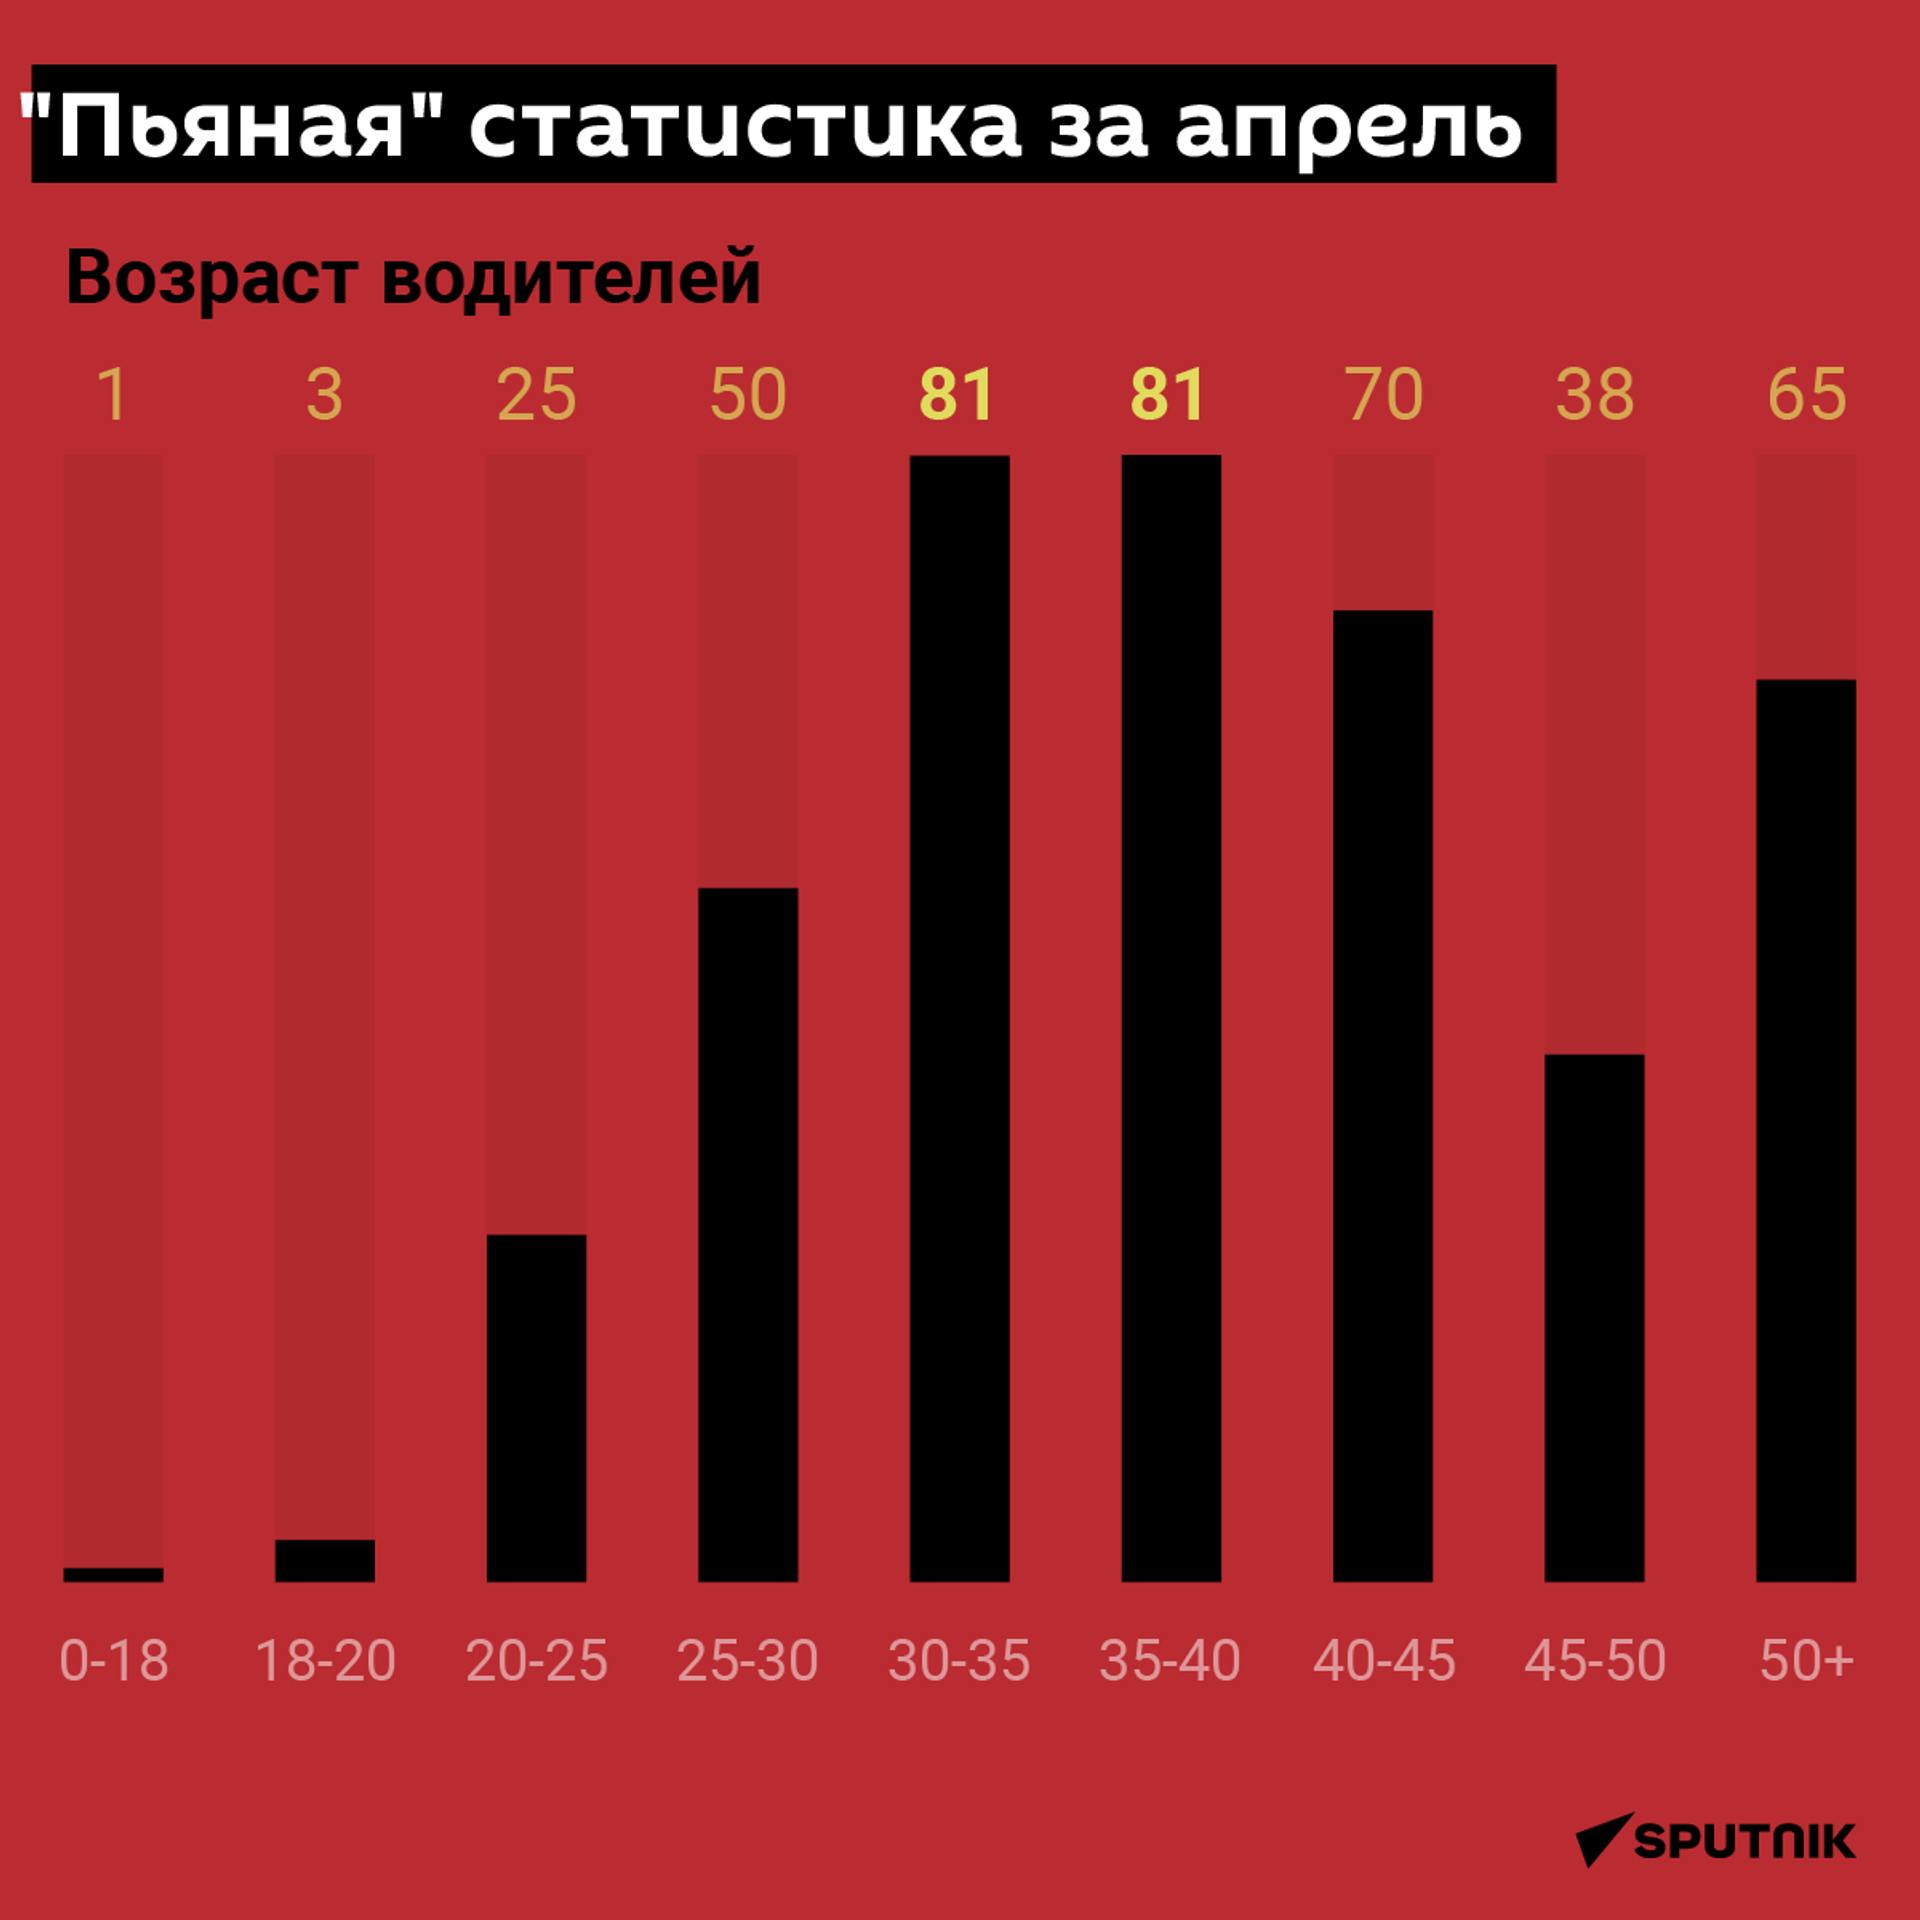 Пьяная статистика за апрель  - Sputnik Абхазия, 1920, 17.05.2022